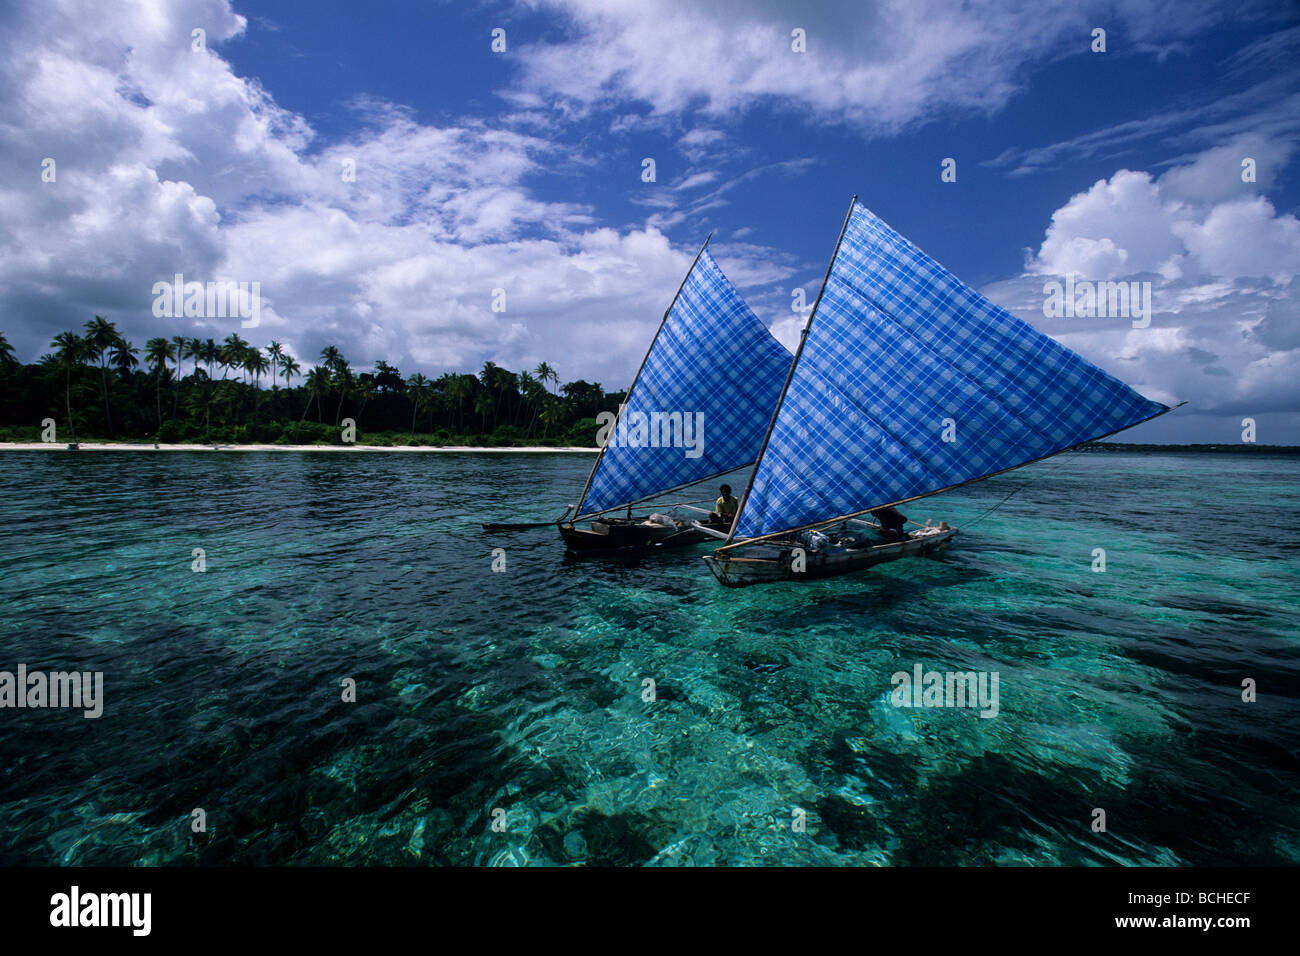 Bateaux de pêcheurs traditionnels avec Outrigger Célèbes Wakatobi Indonésie indo-pacifique Banque D'Images